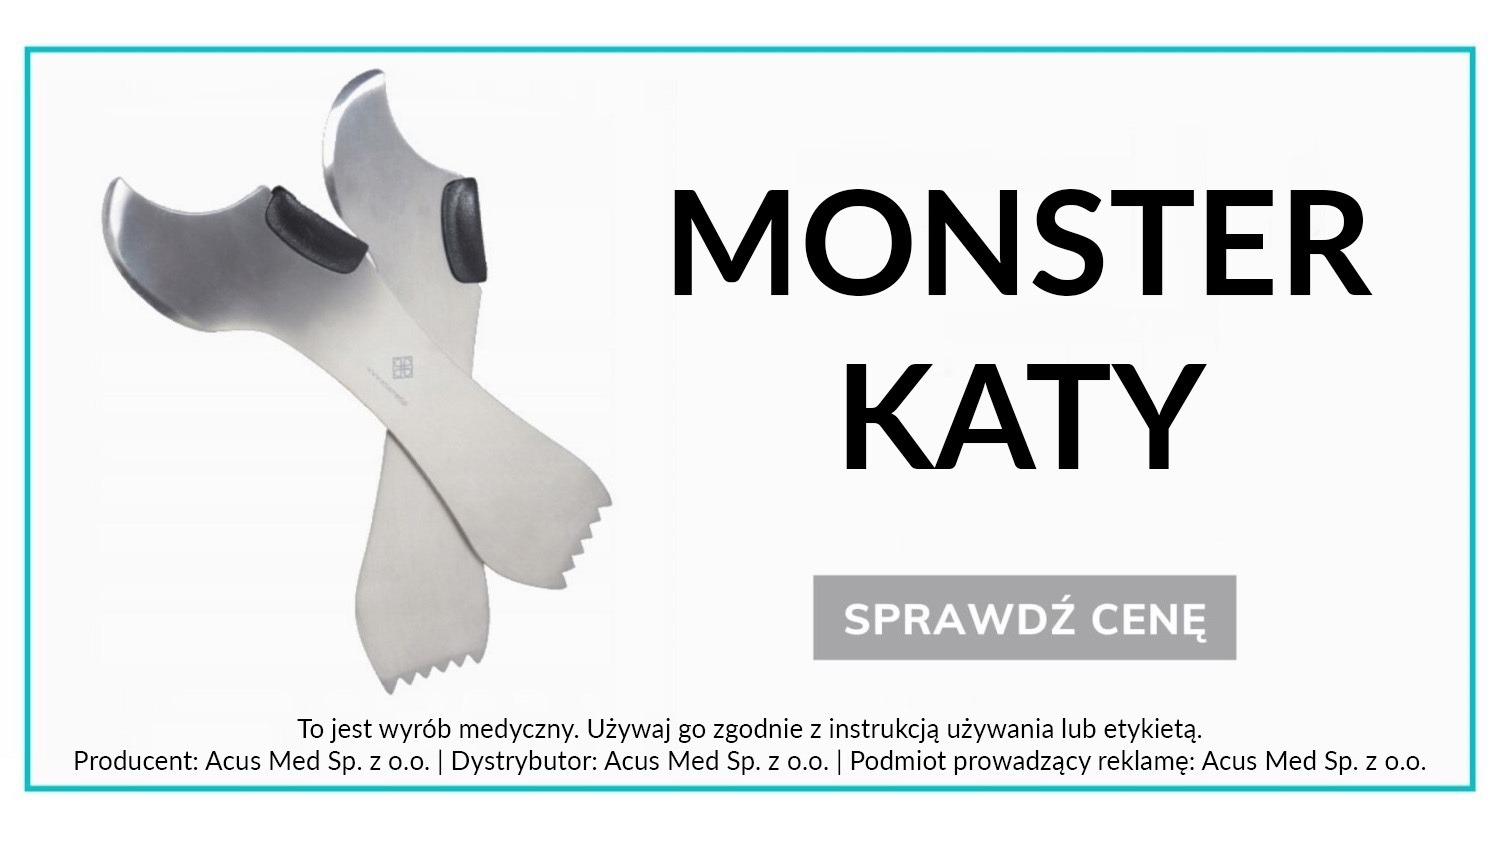 Monster katy 